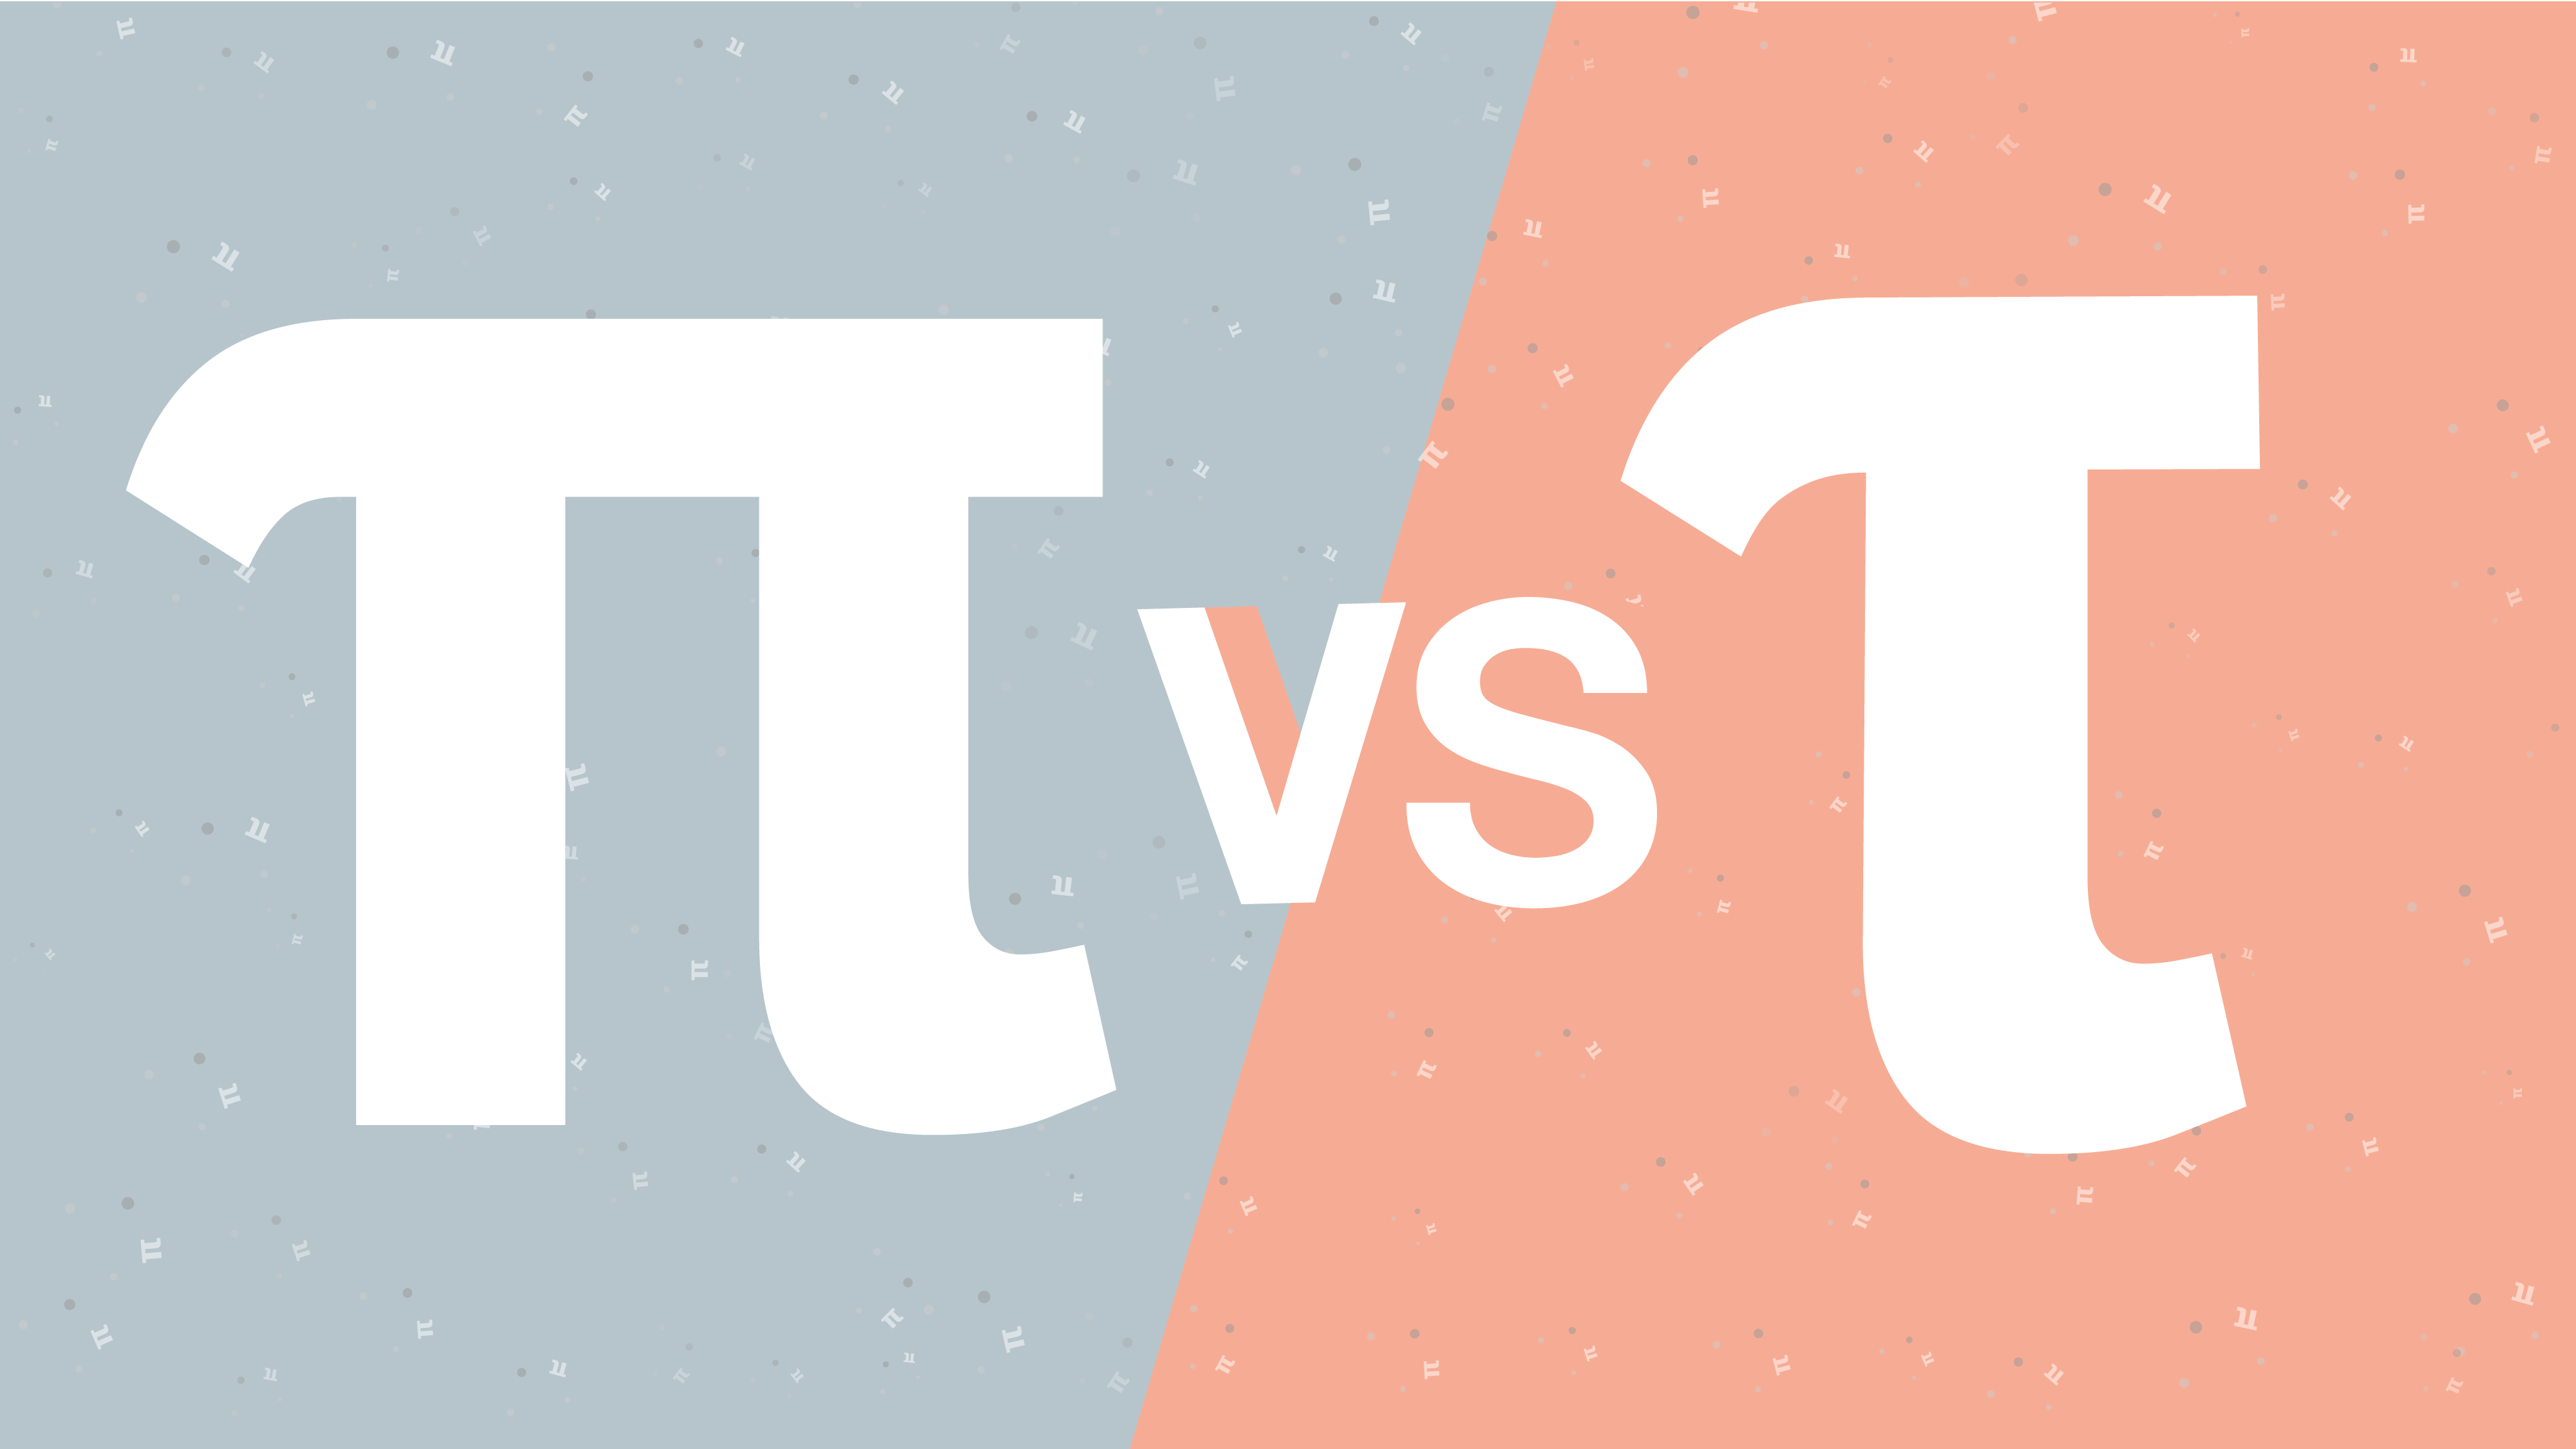 Pi versus Tau graphic